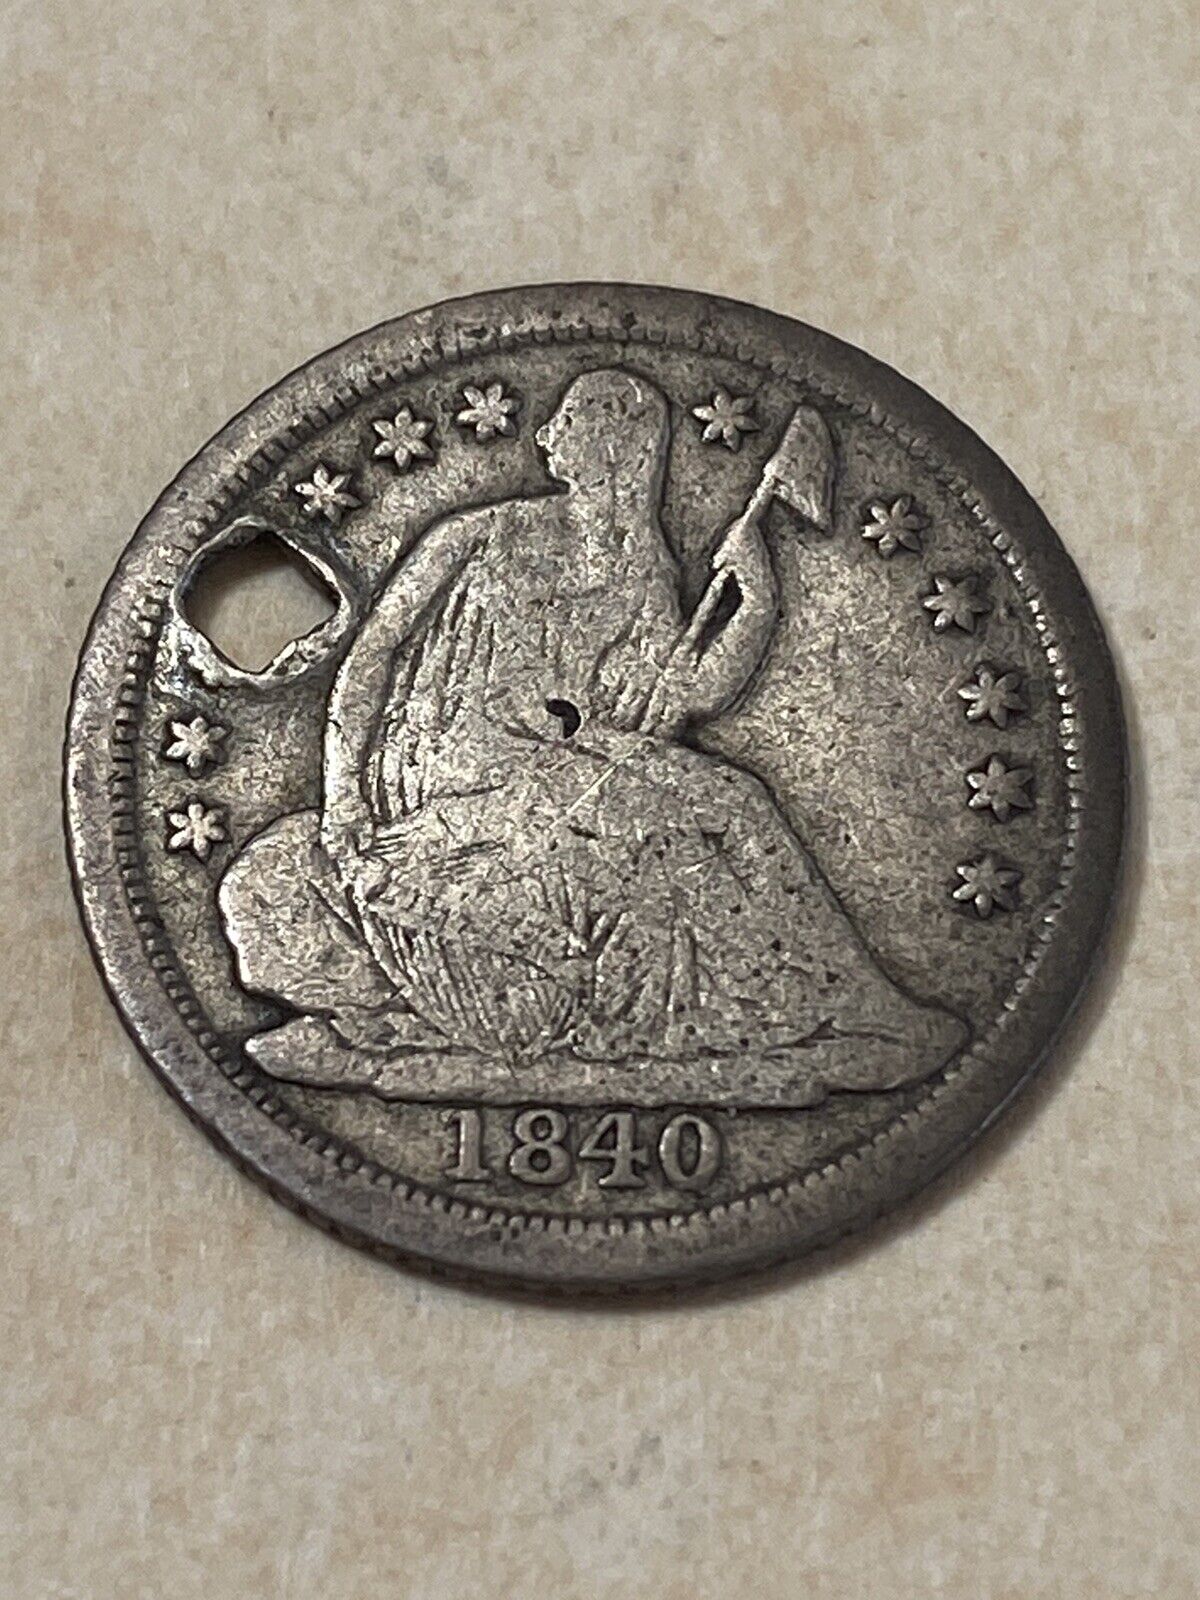 U.s. 1840 o Seated Liberty Half Dime 90% Silver - Holed - You Grade!!